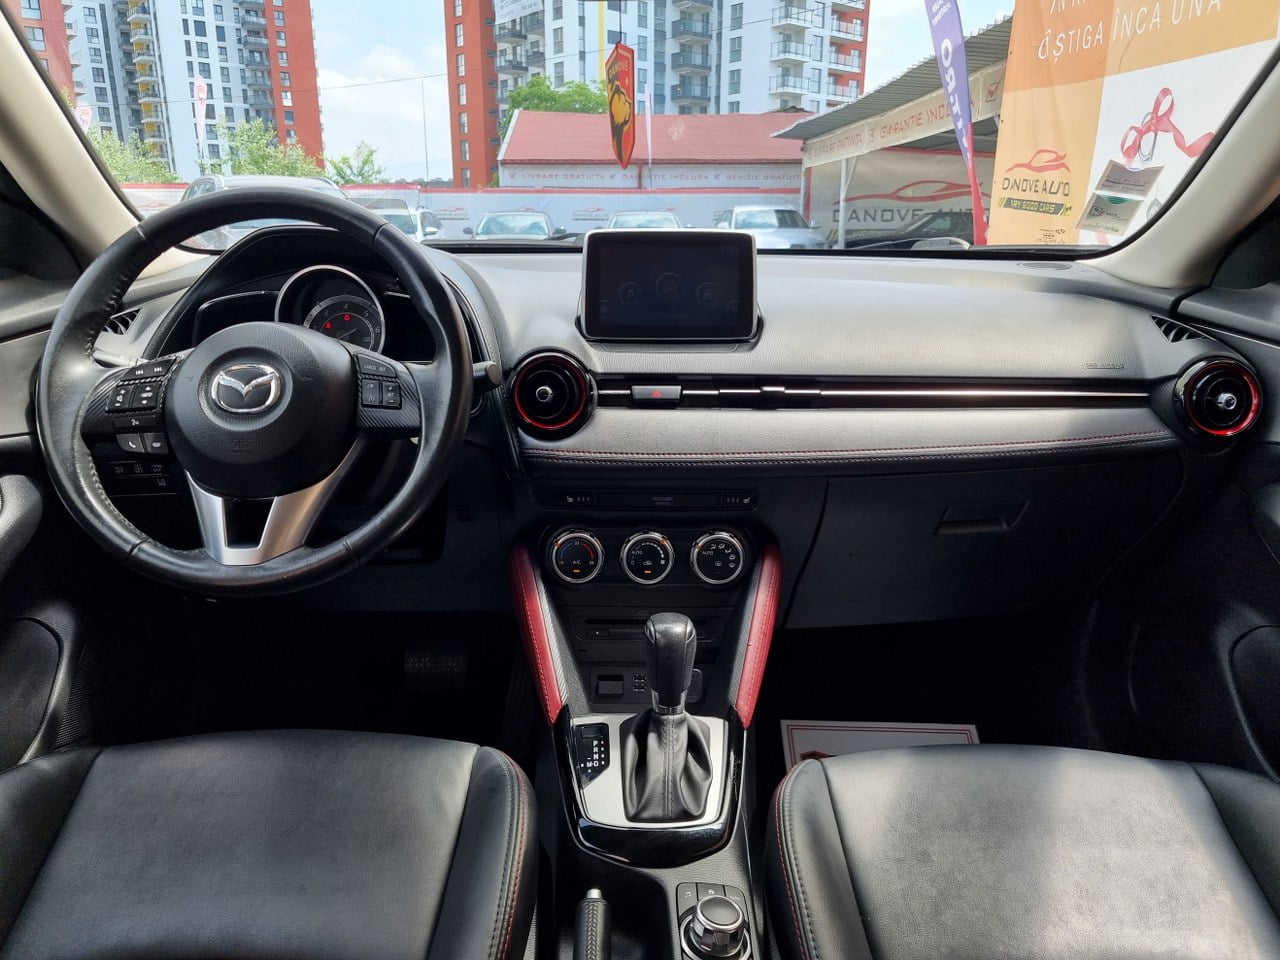 Mazda CX-3 in RATE FIXE, Livrare GRATUITA, 12 Luni GARANTIE, Pret 15699€ full